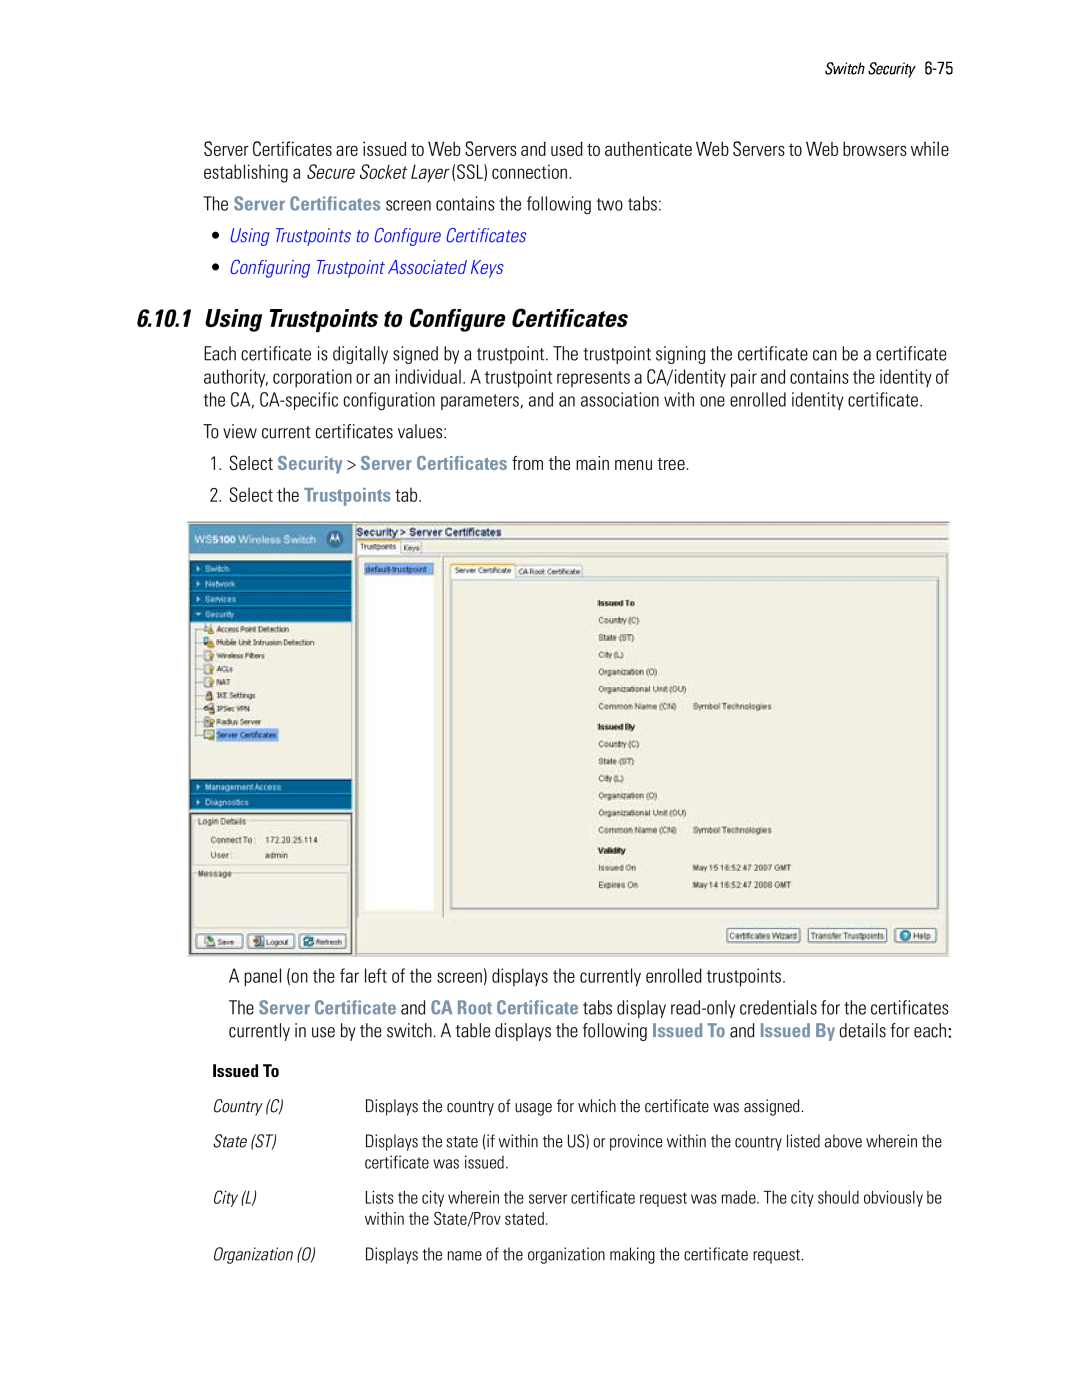 Motorola WS5100 manual 6.10.1Using Trustpoints to Configure Certificates, •Using Trustpoints to Configure Certificates 